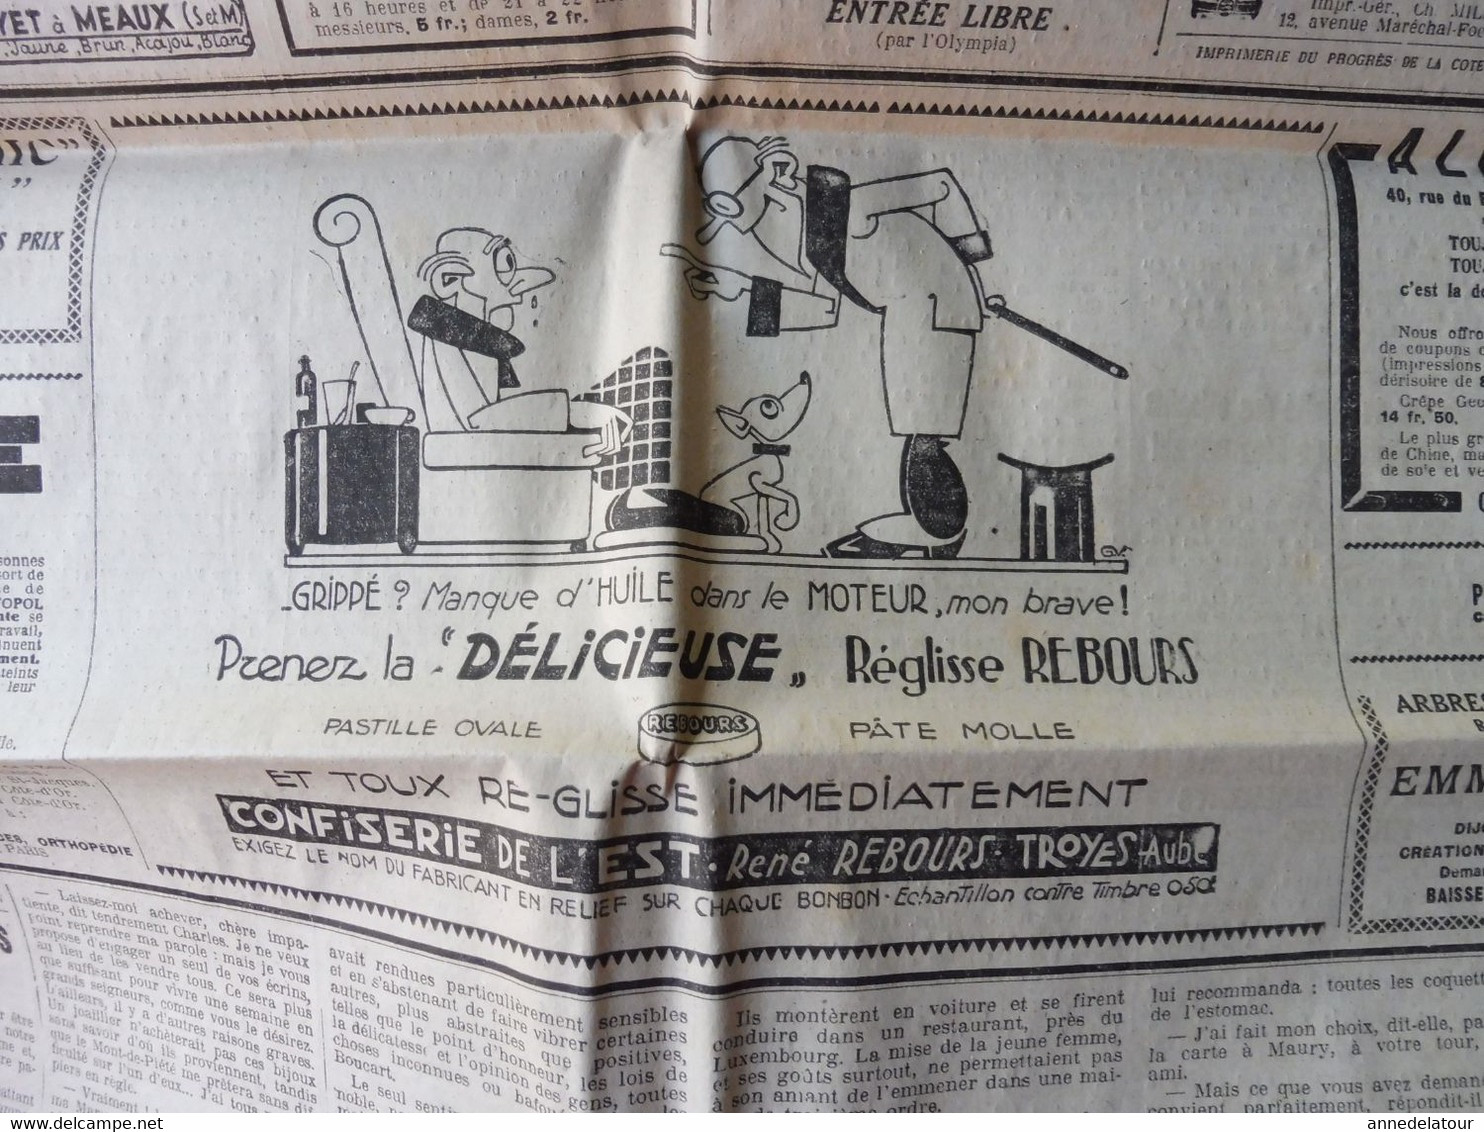 1932 LE PROGRES : Plein succès du lancement du NORMANDIE ;  Négociation dans les partis prolétariens ; Publicité ; etc